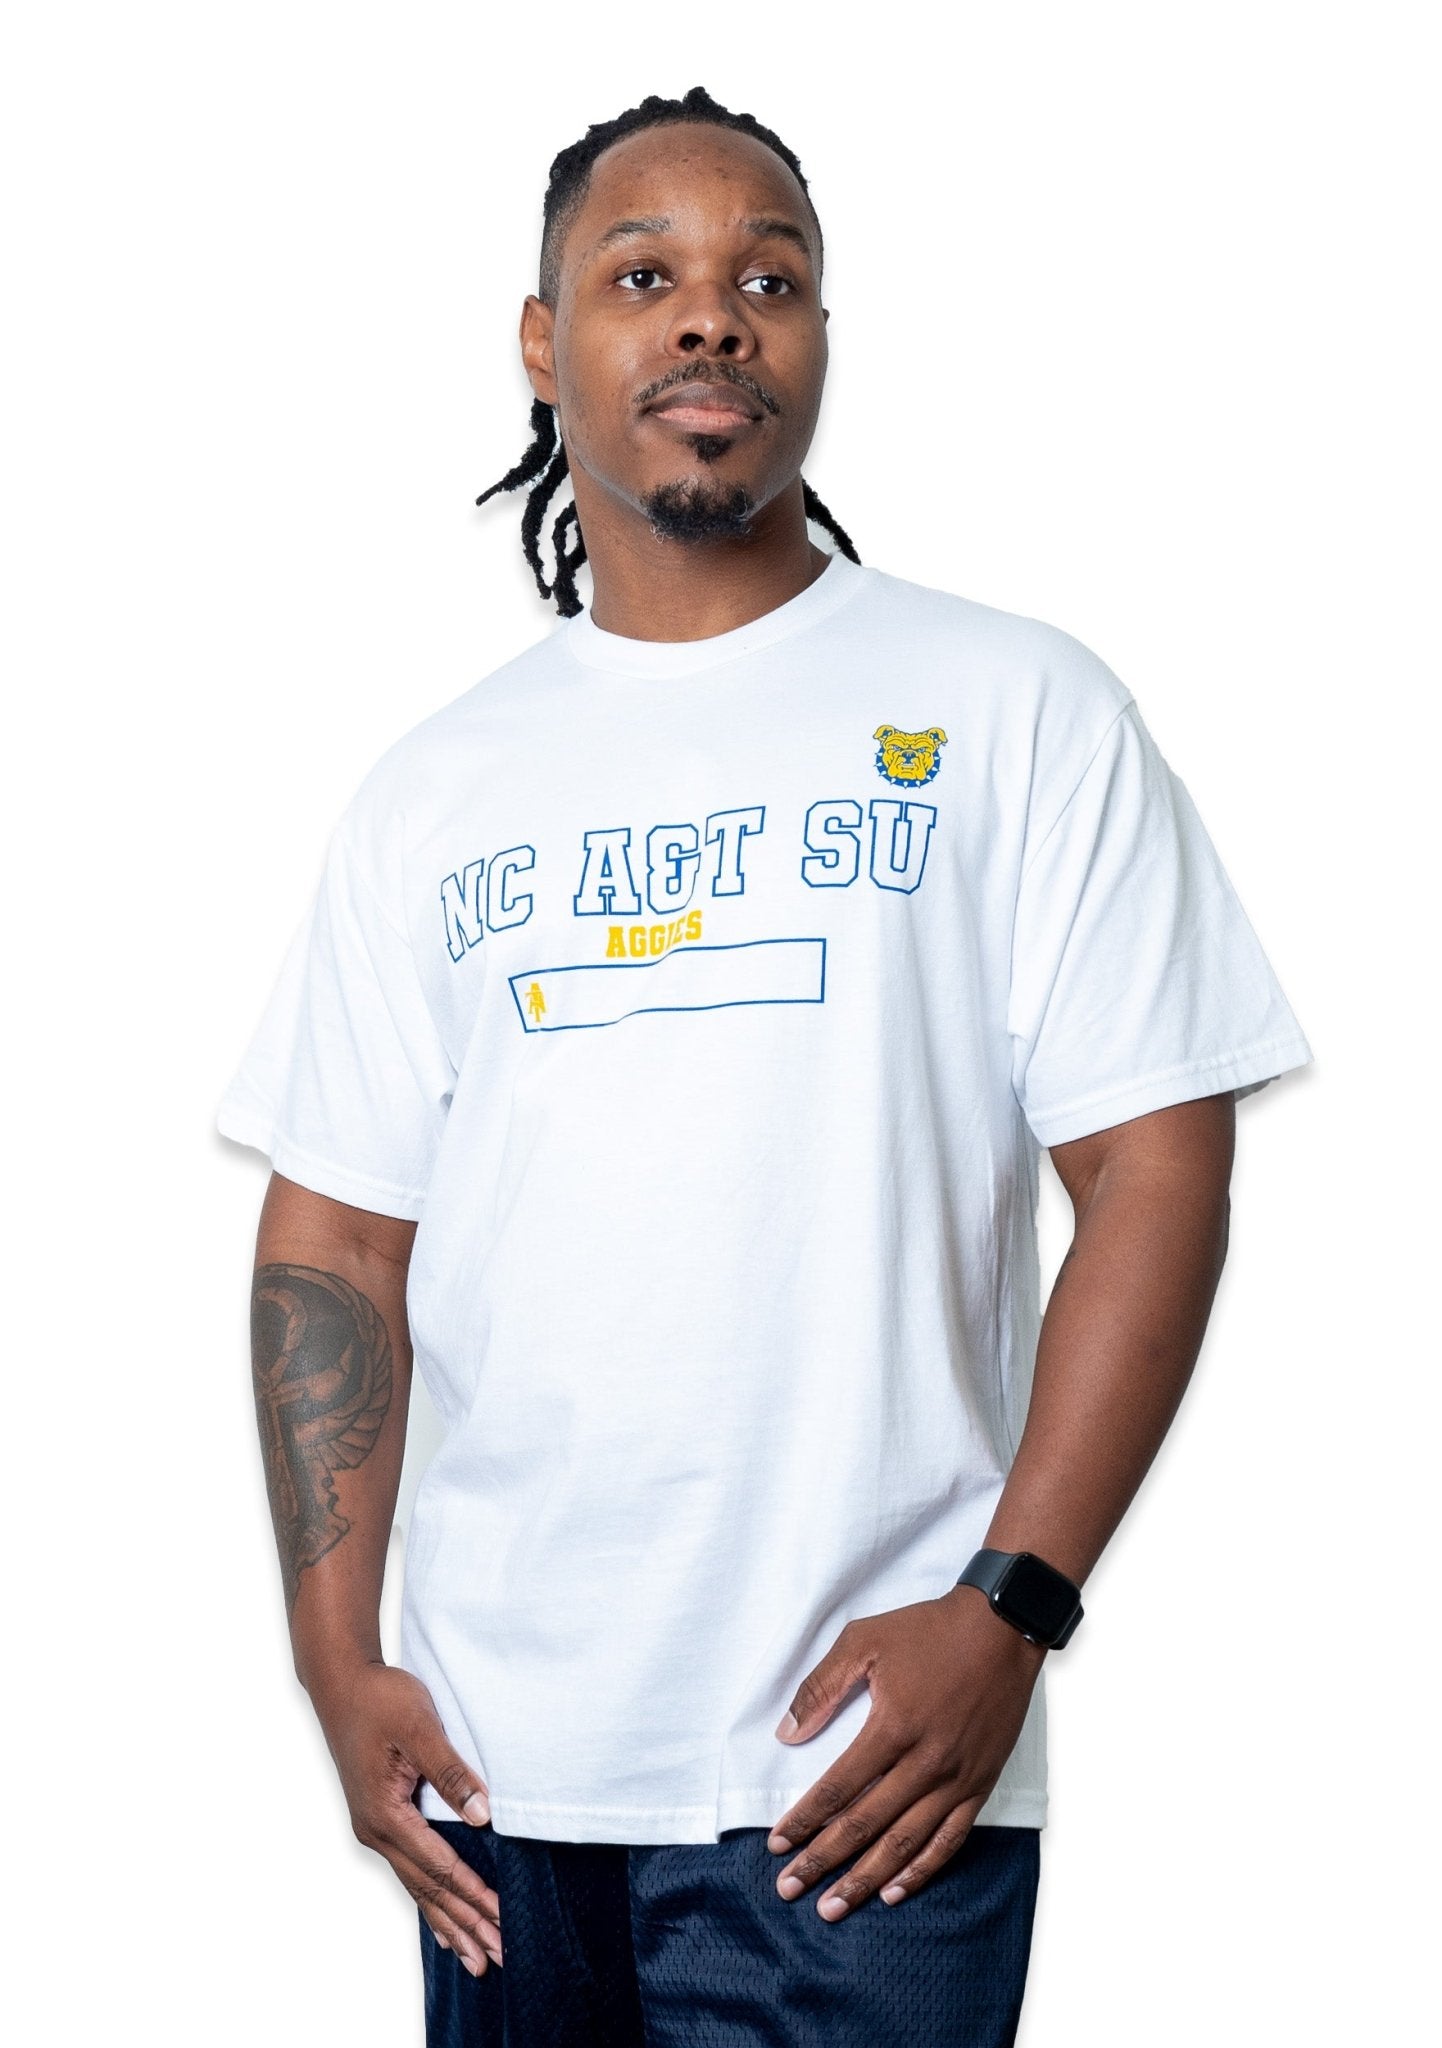 NCA&T SU Athletics T-shirt - 9tofive Shop - 95C-AT002WL